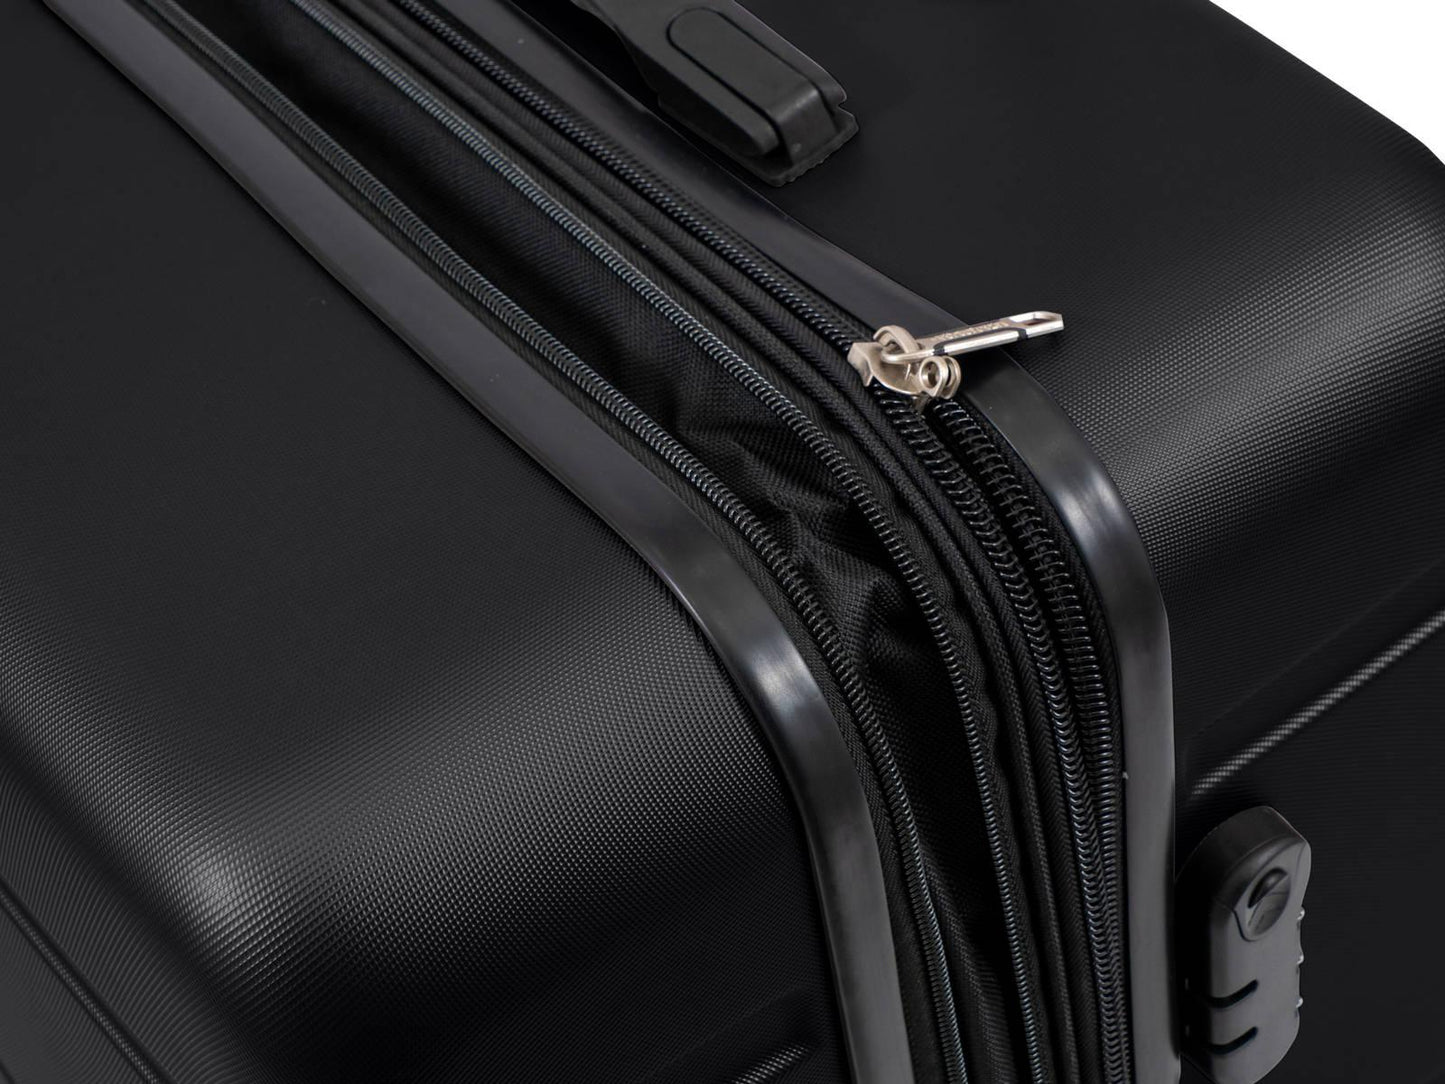 מזוודה קשיחה גדולה 28" דגם 1807 בצבע שחור - MASHBIR//365